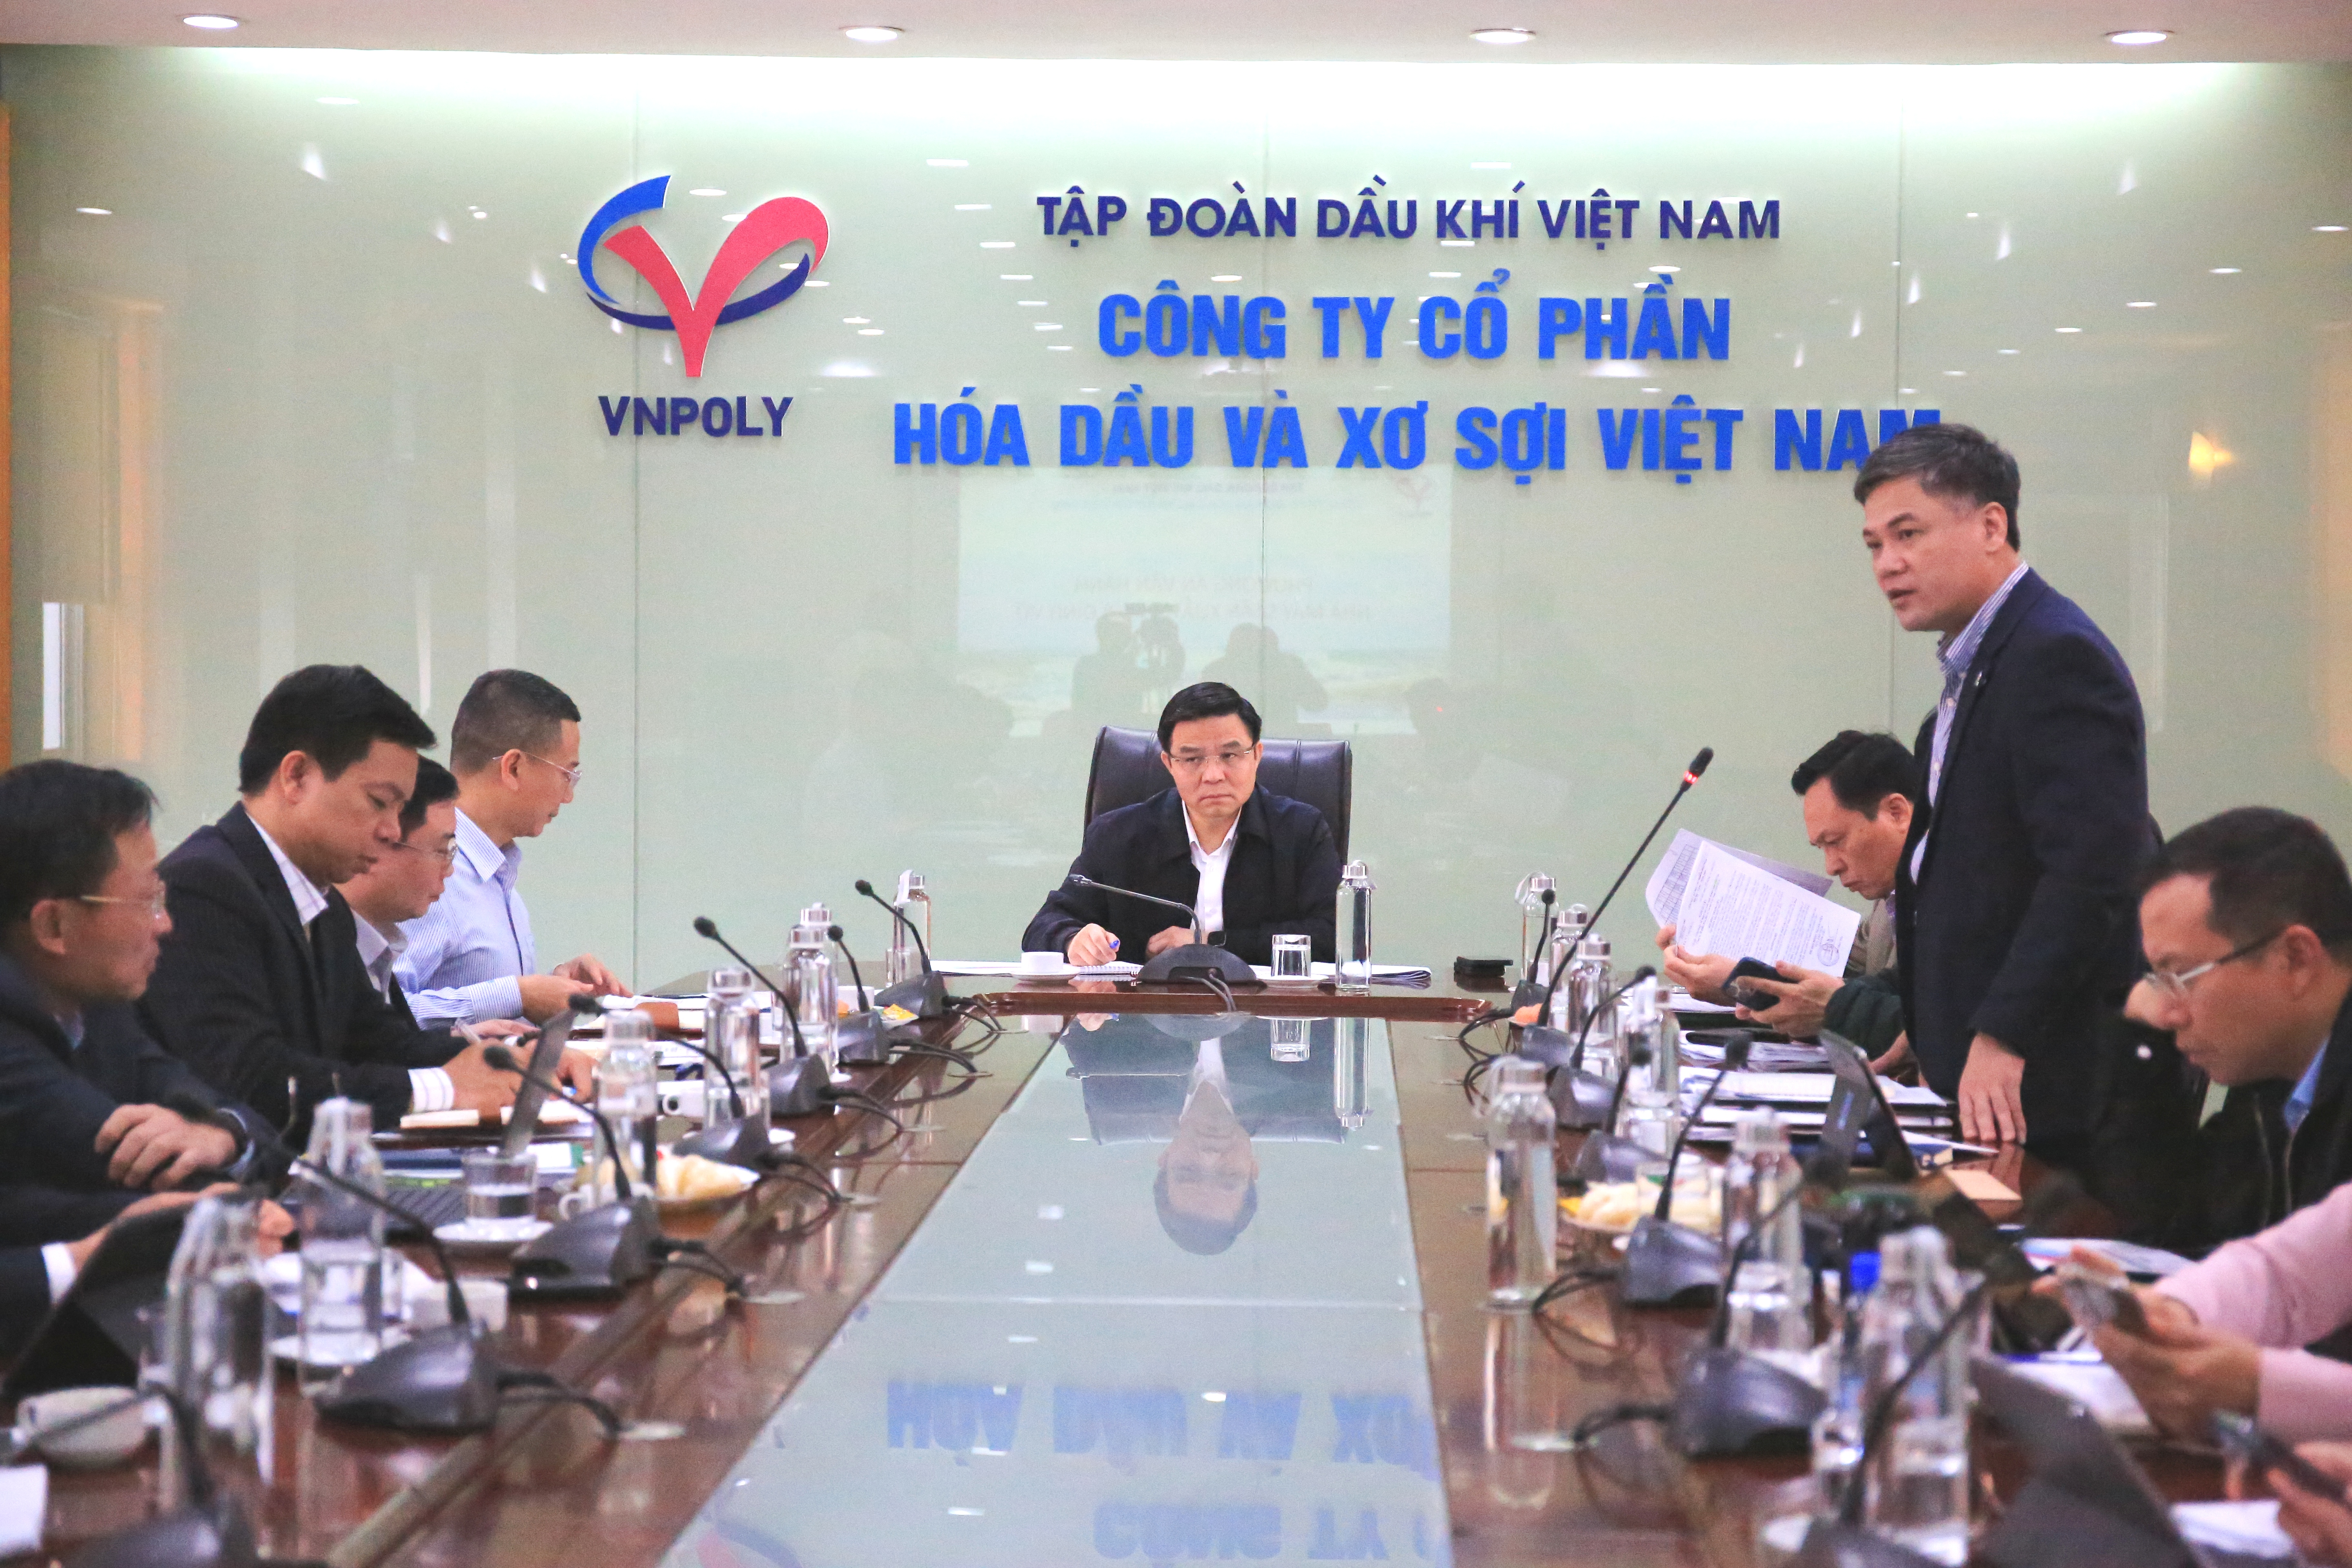 Chủ tịch HĐTV, Tổng Giám đốc Petrovietnam Lê Mạnh Hùng: Tập trung nguồn lực phục hồi sản xuất Nhà máy Xơ sợi Việt Nam